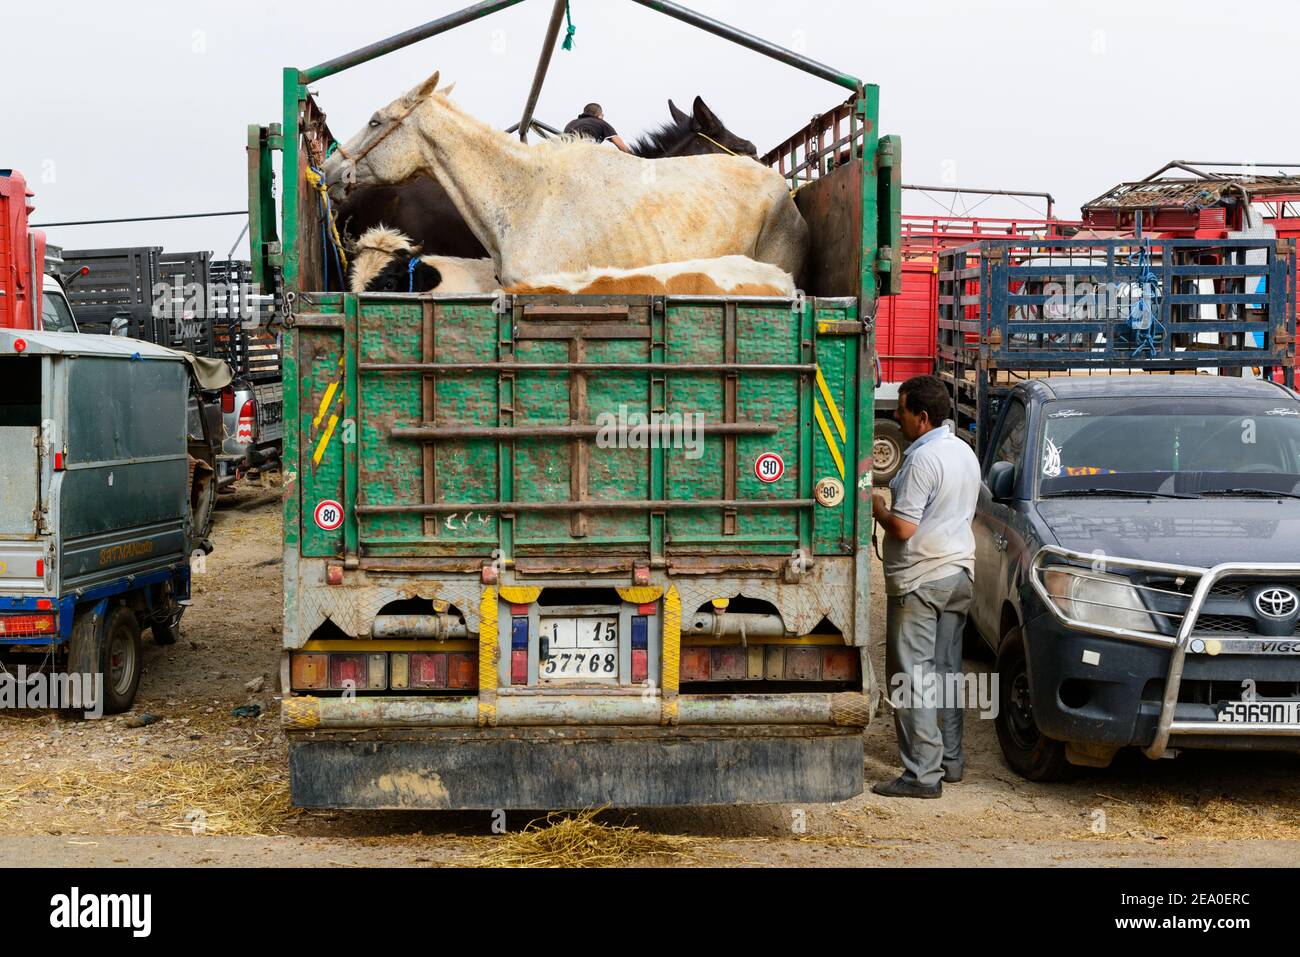 Au souq hebdomadaire à Azrou. Un petit cheval blanc chargé dans un camion. Maroc Banque D'Images